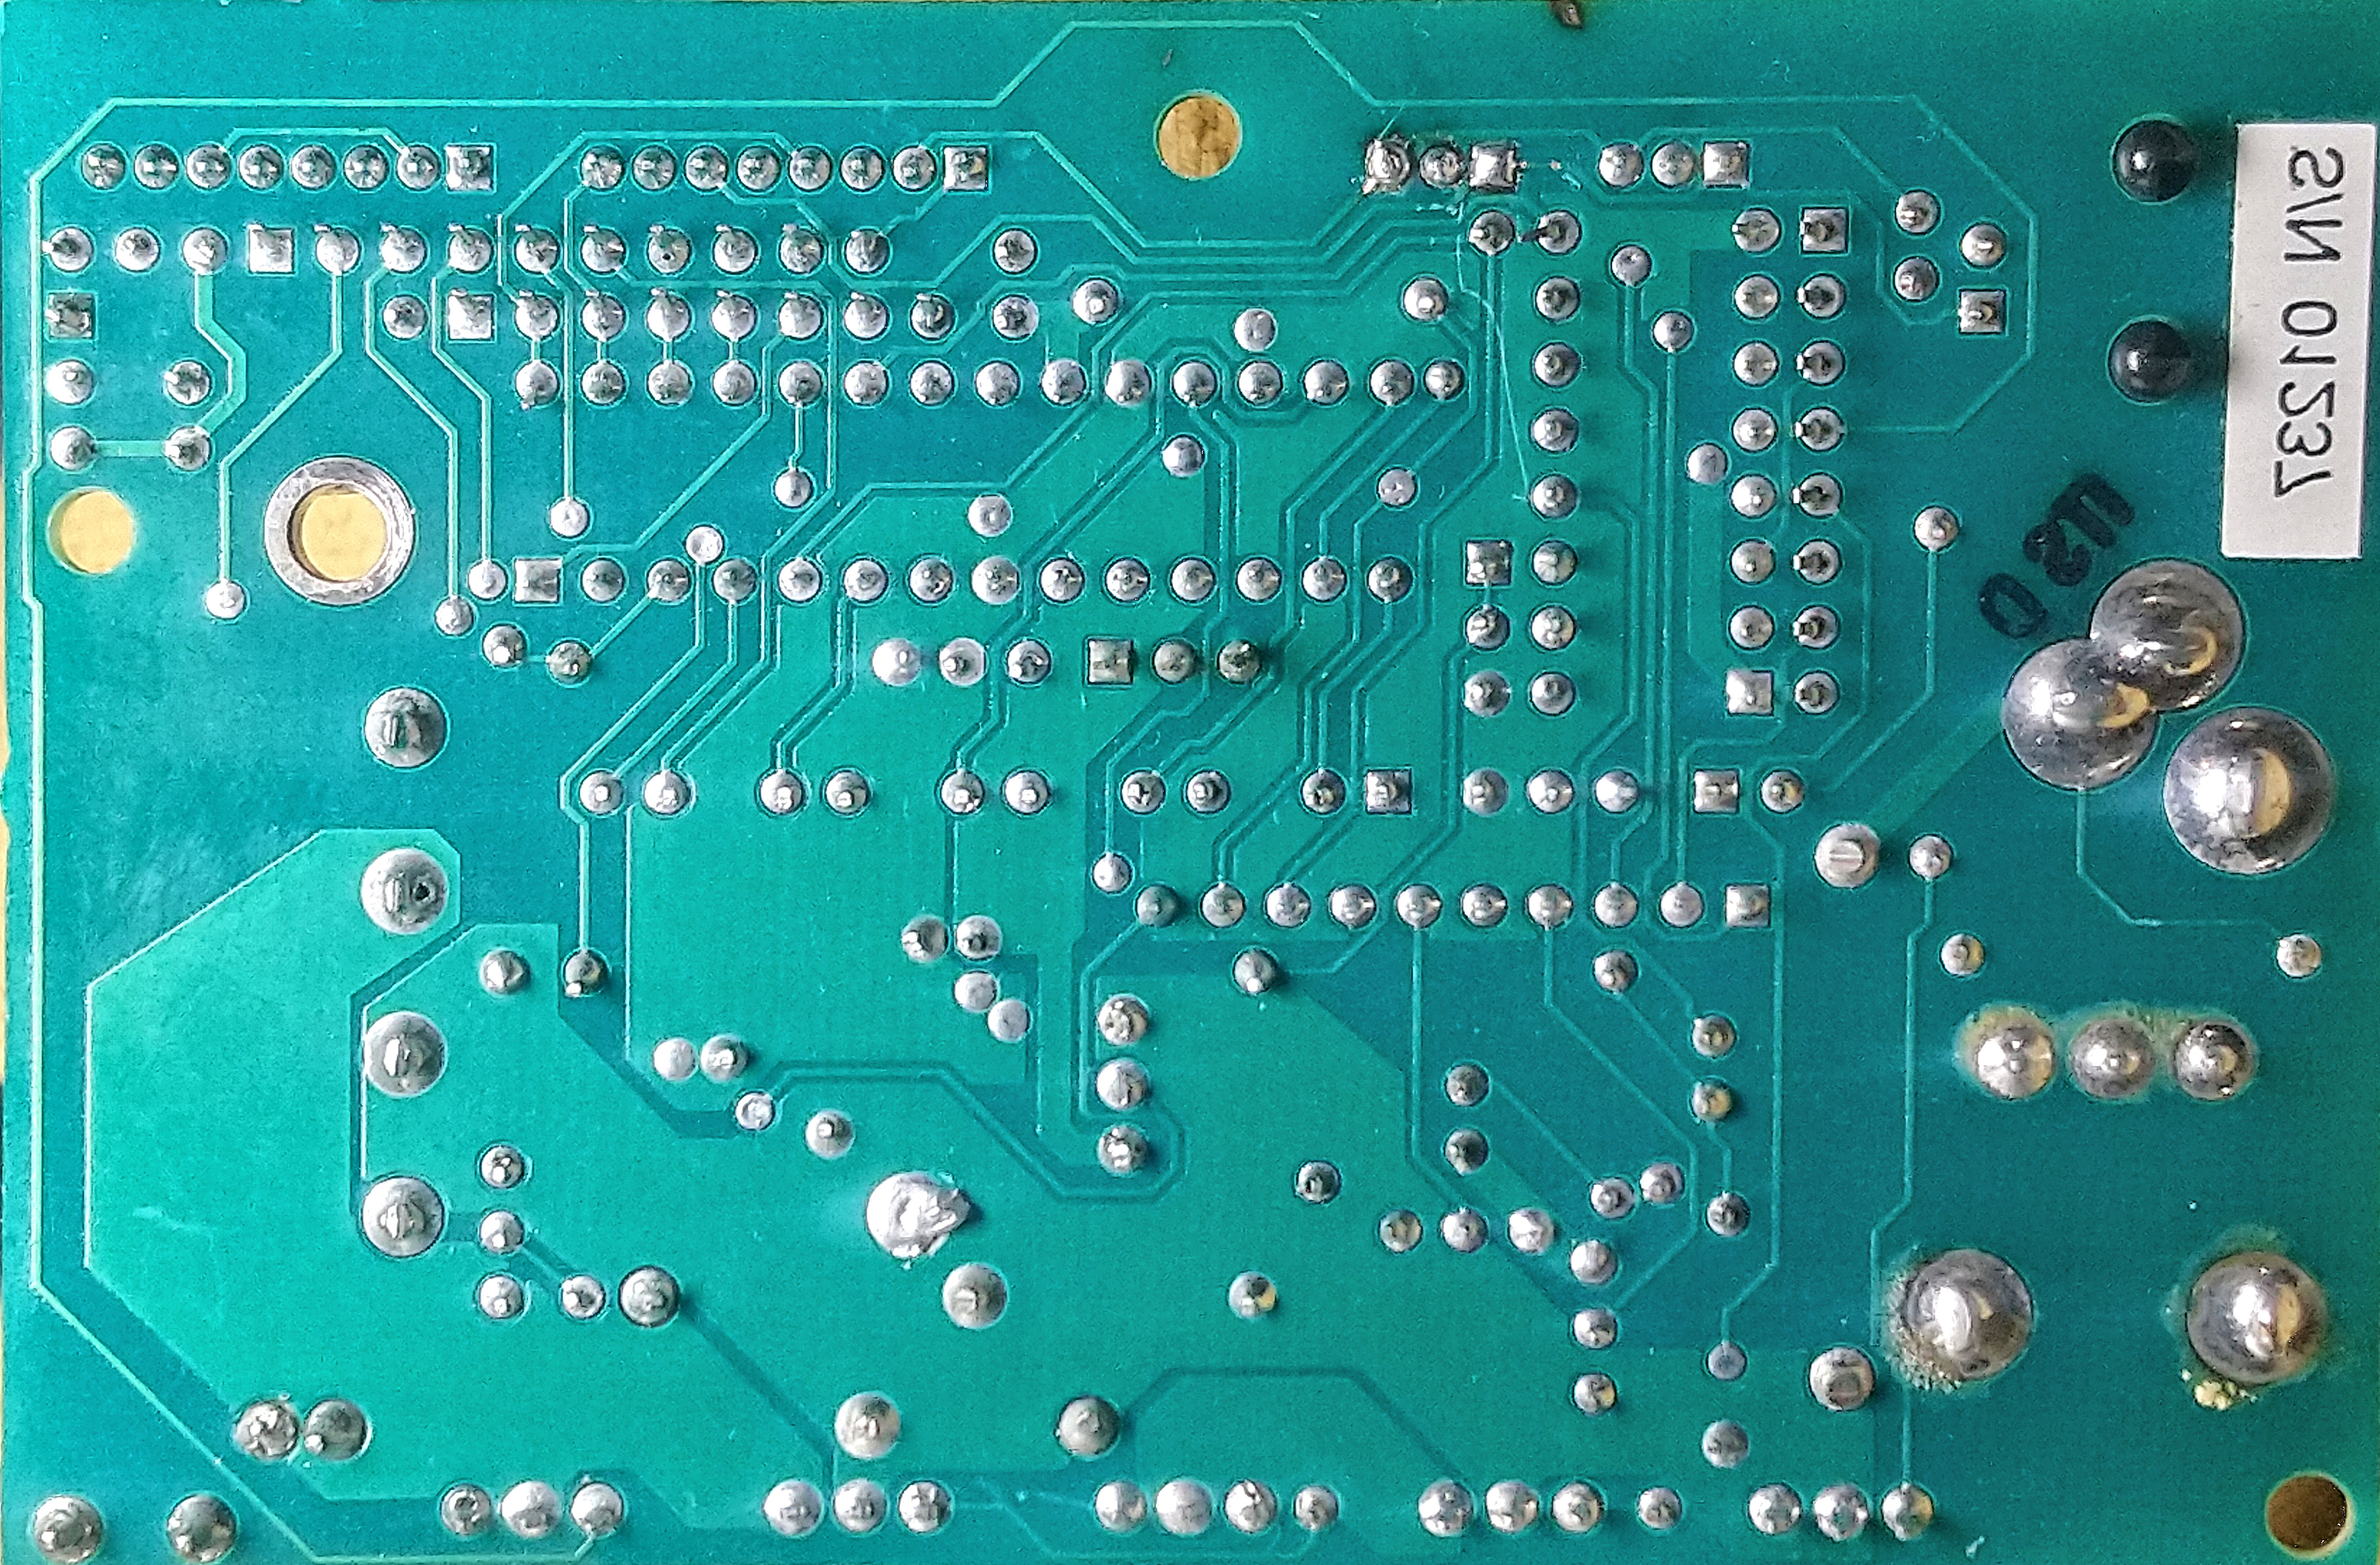 300dpi photo of PCB solder side.